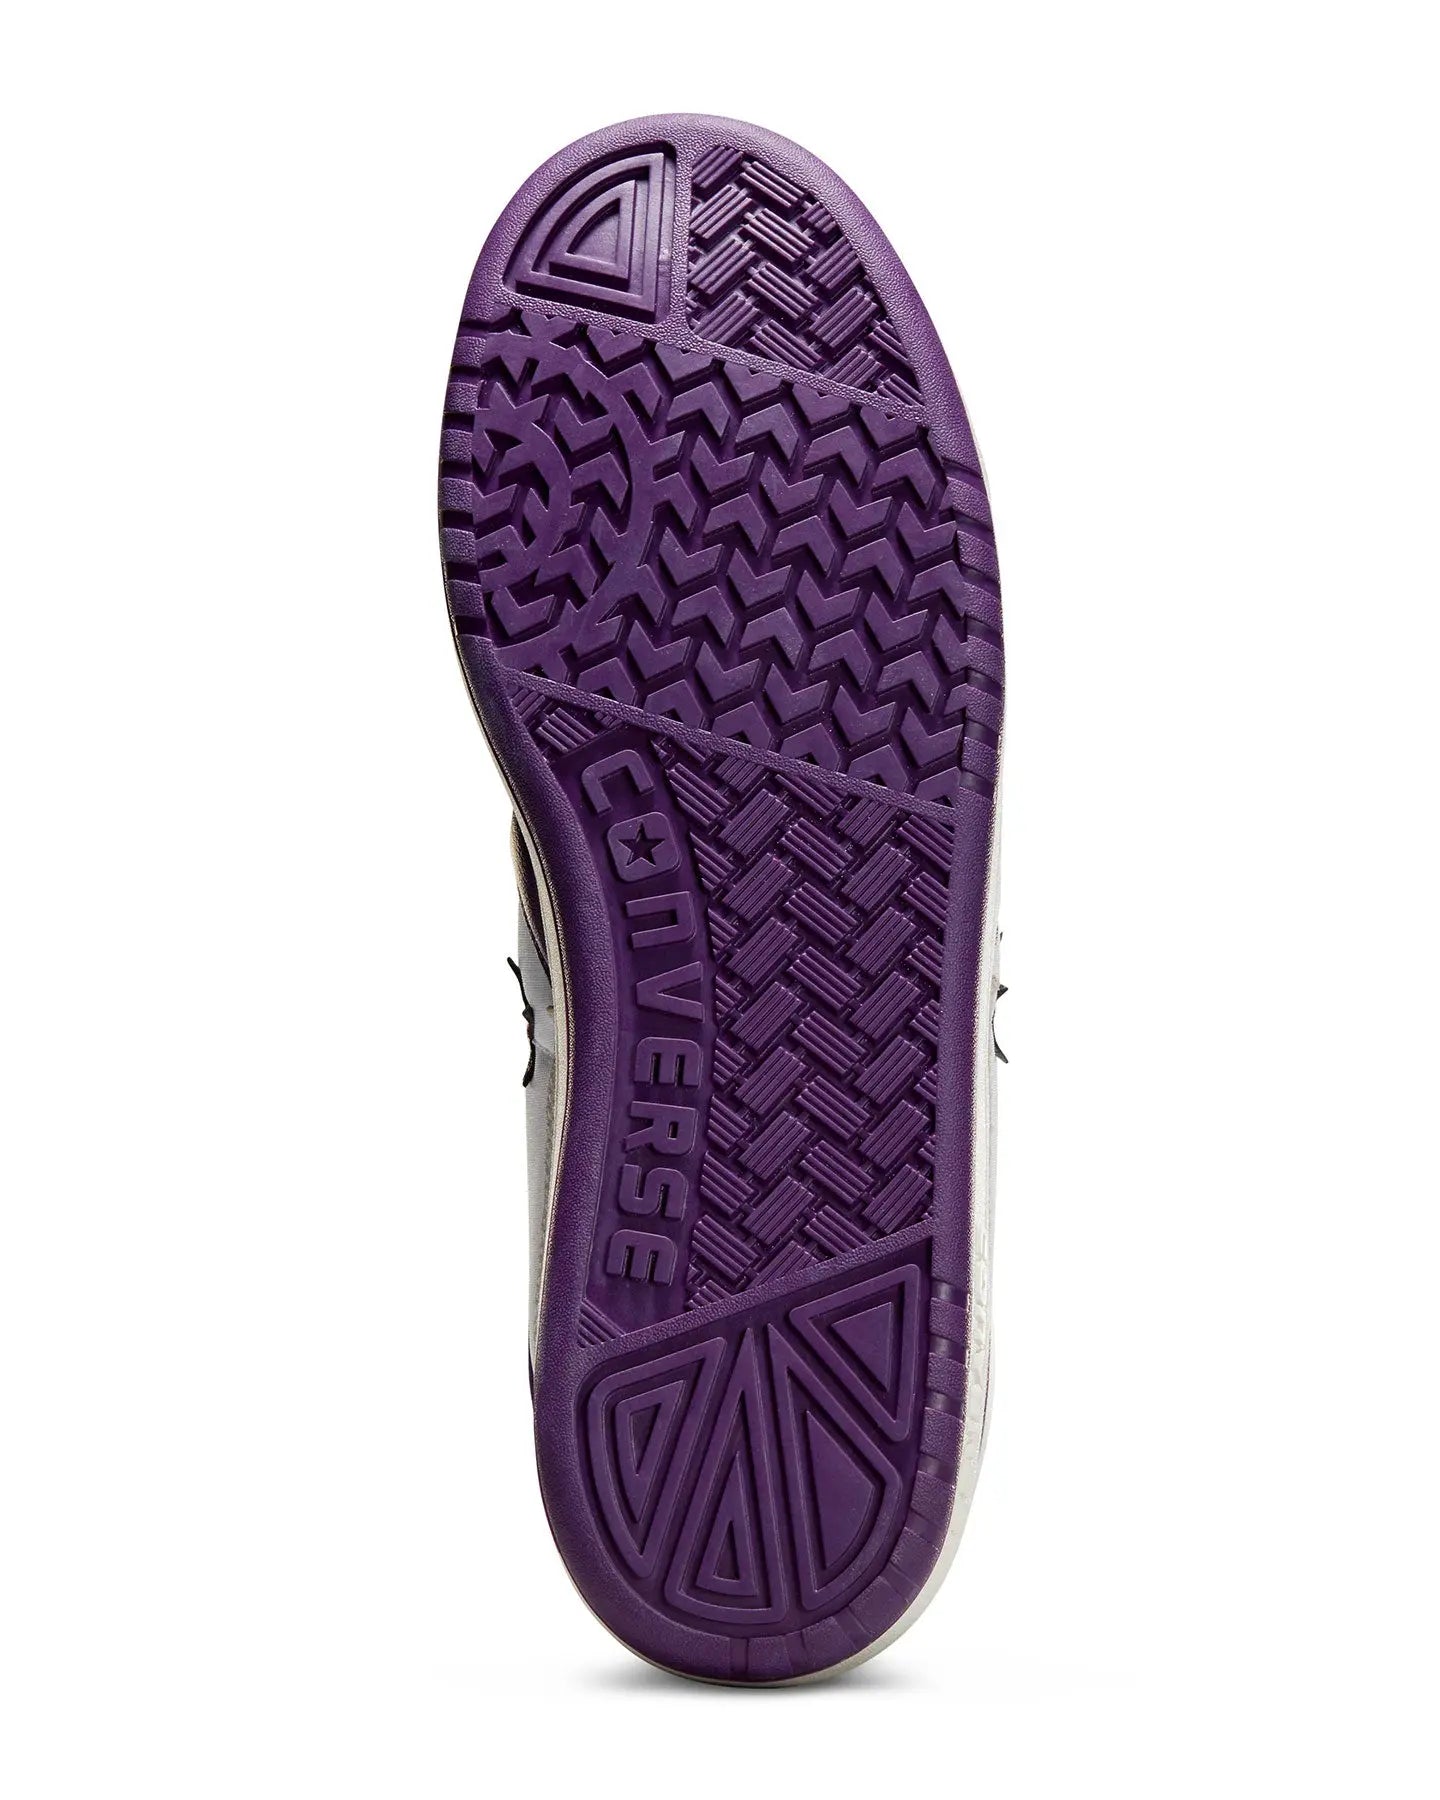 Cons Fastbreak Pro Mid - White / Grey / Purple Footwear